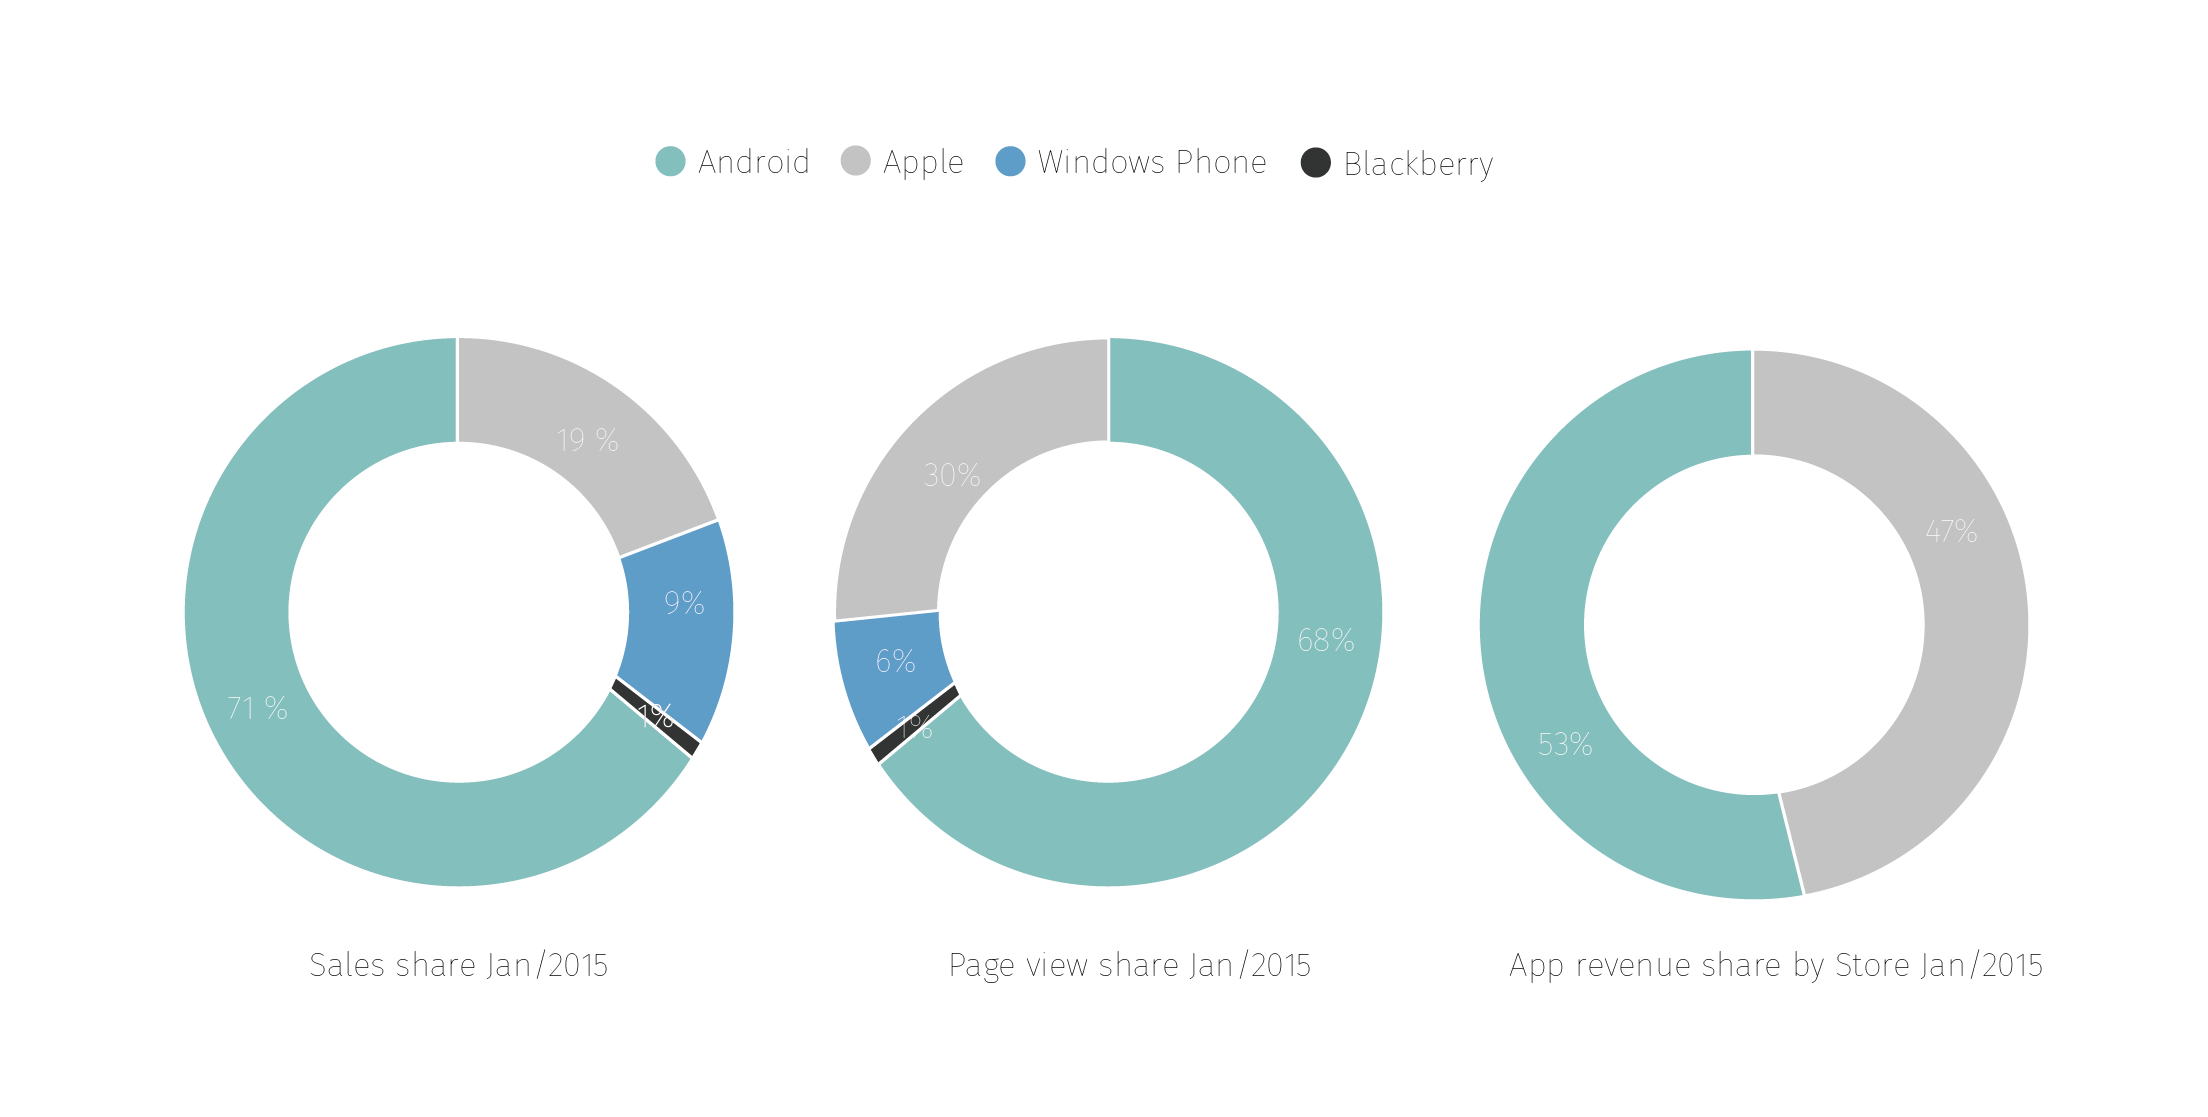 Marktanteile der mobilen Ökosysteme: Android, Apple, Windows Phone  & Blackberry